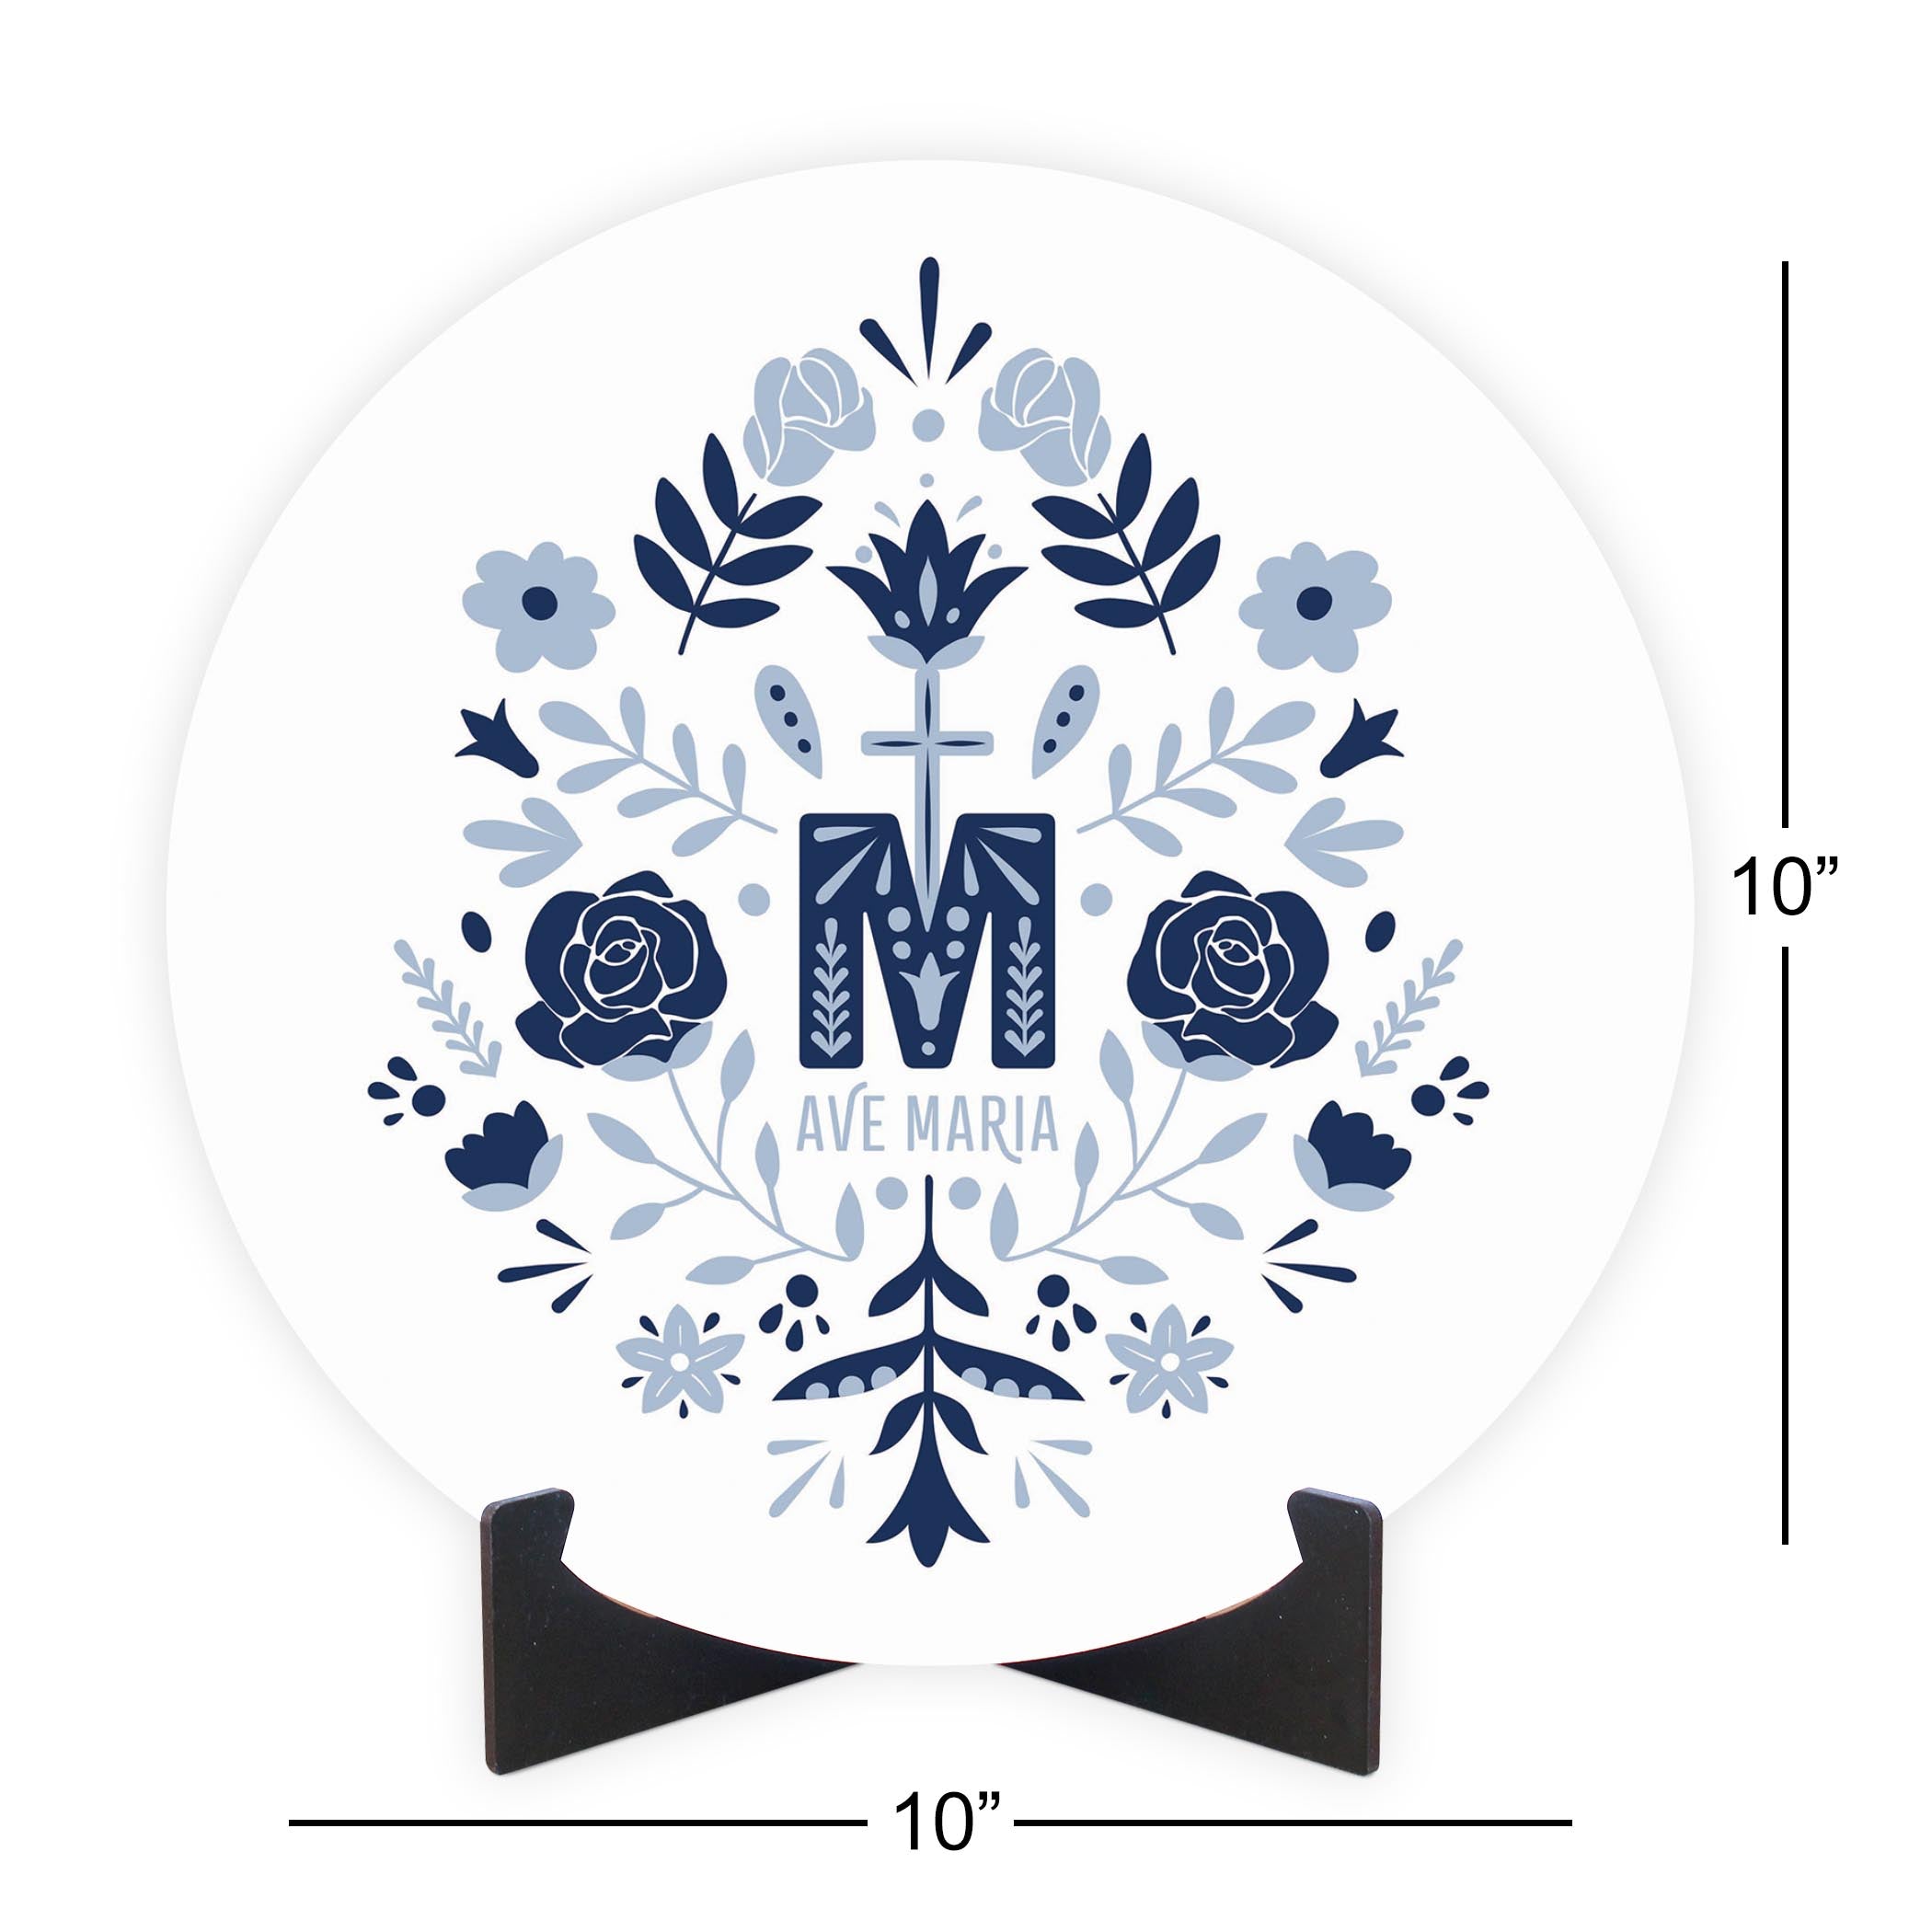 Ave Maria Monogram Round Wood Plaque-10"x10"